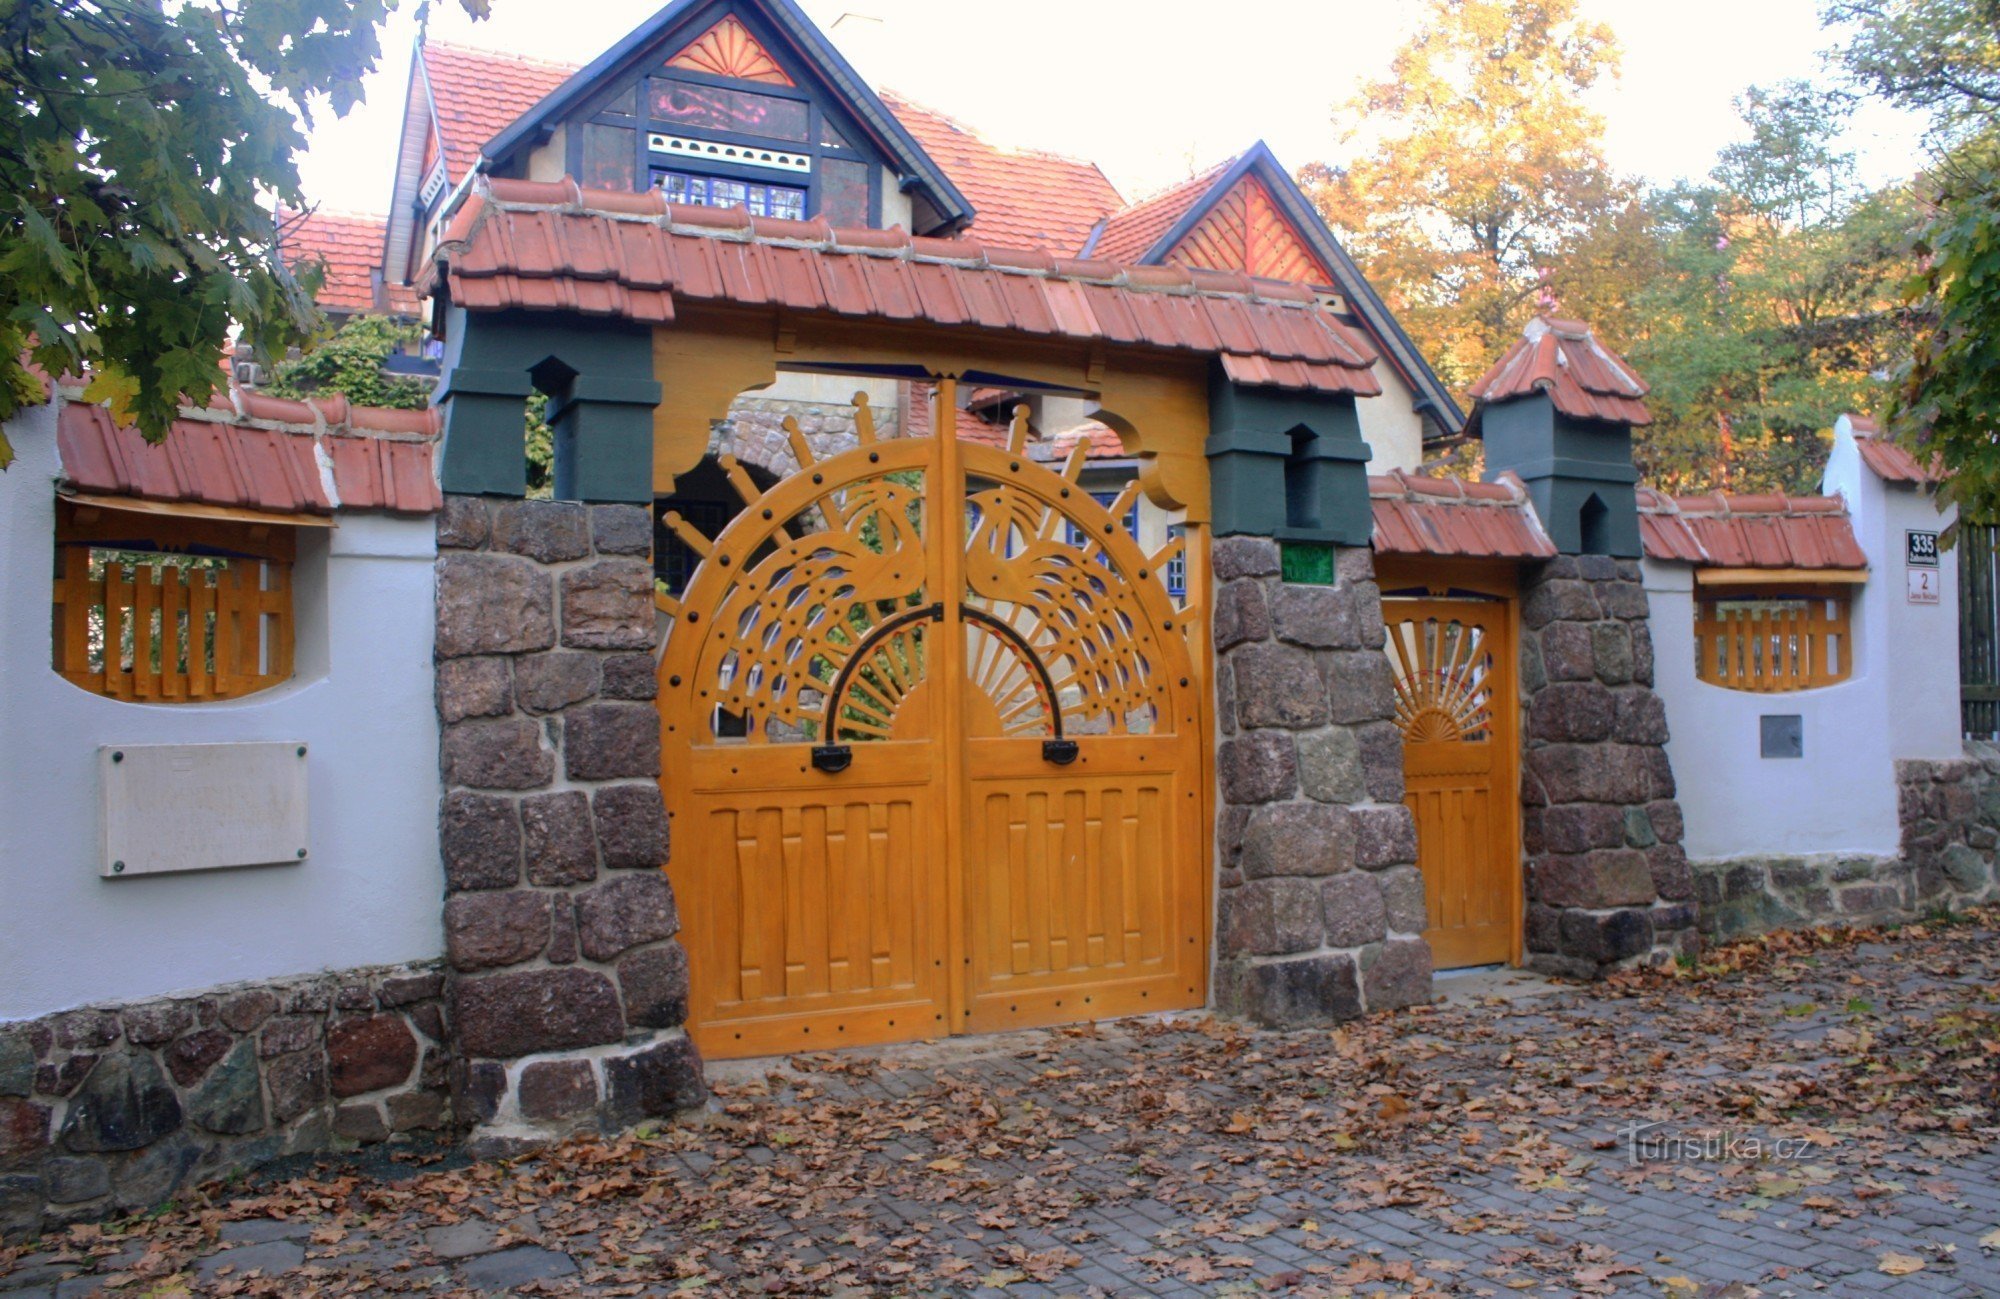 Brno - vila lui Jurkovič, partea de intrare